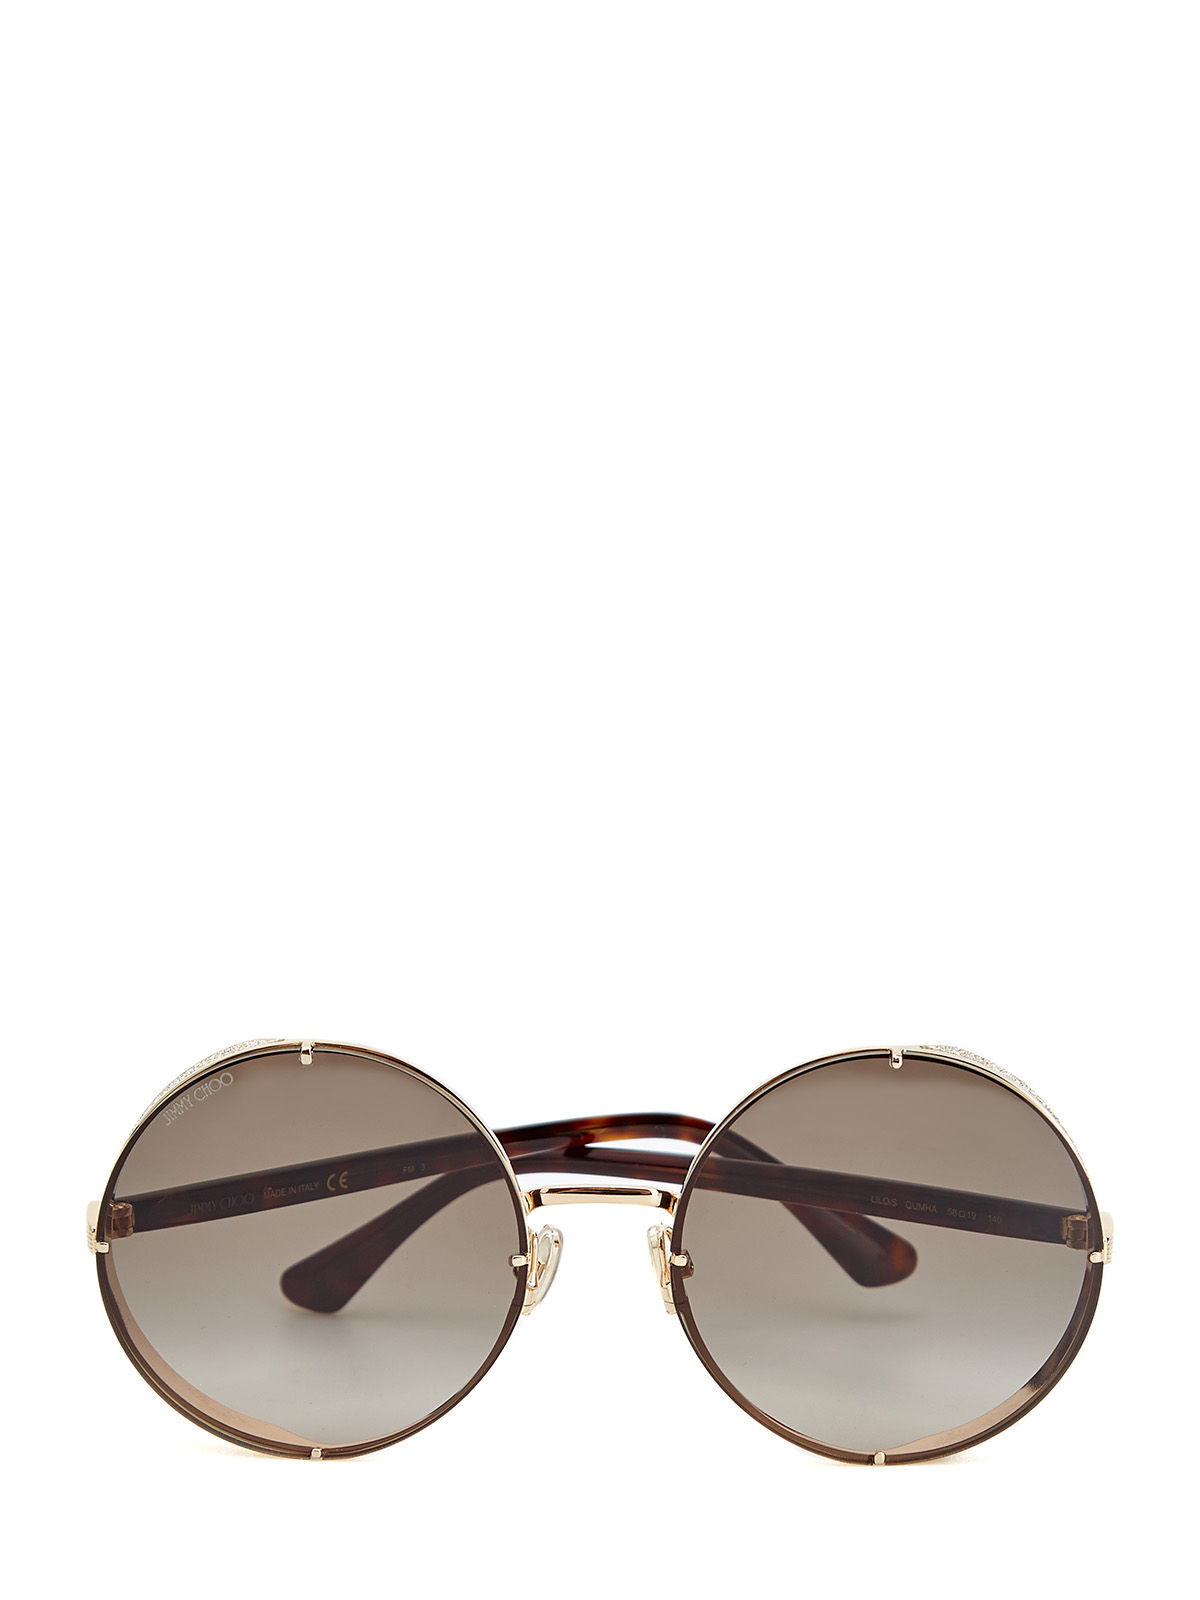 Очки Lilo в круглой оправе с мерцающим декором JIMMY CHOO  (sunglasses) - фото 1